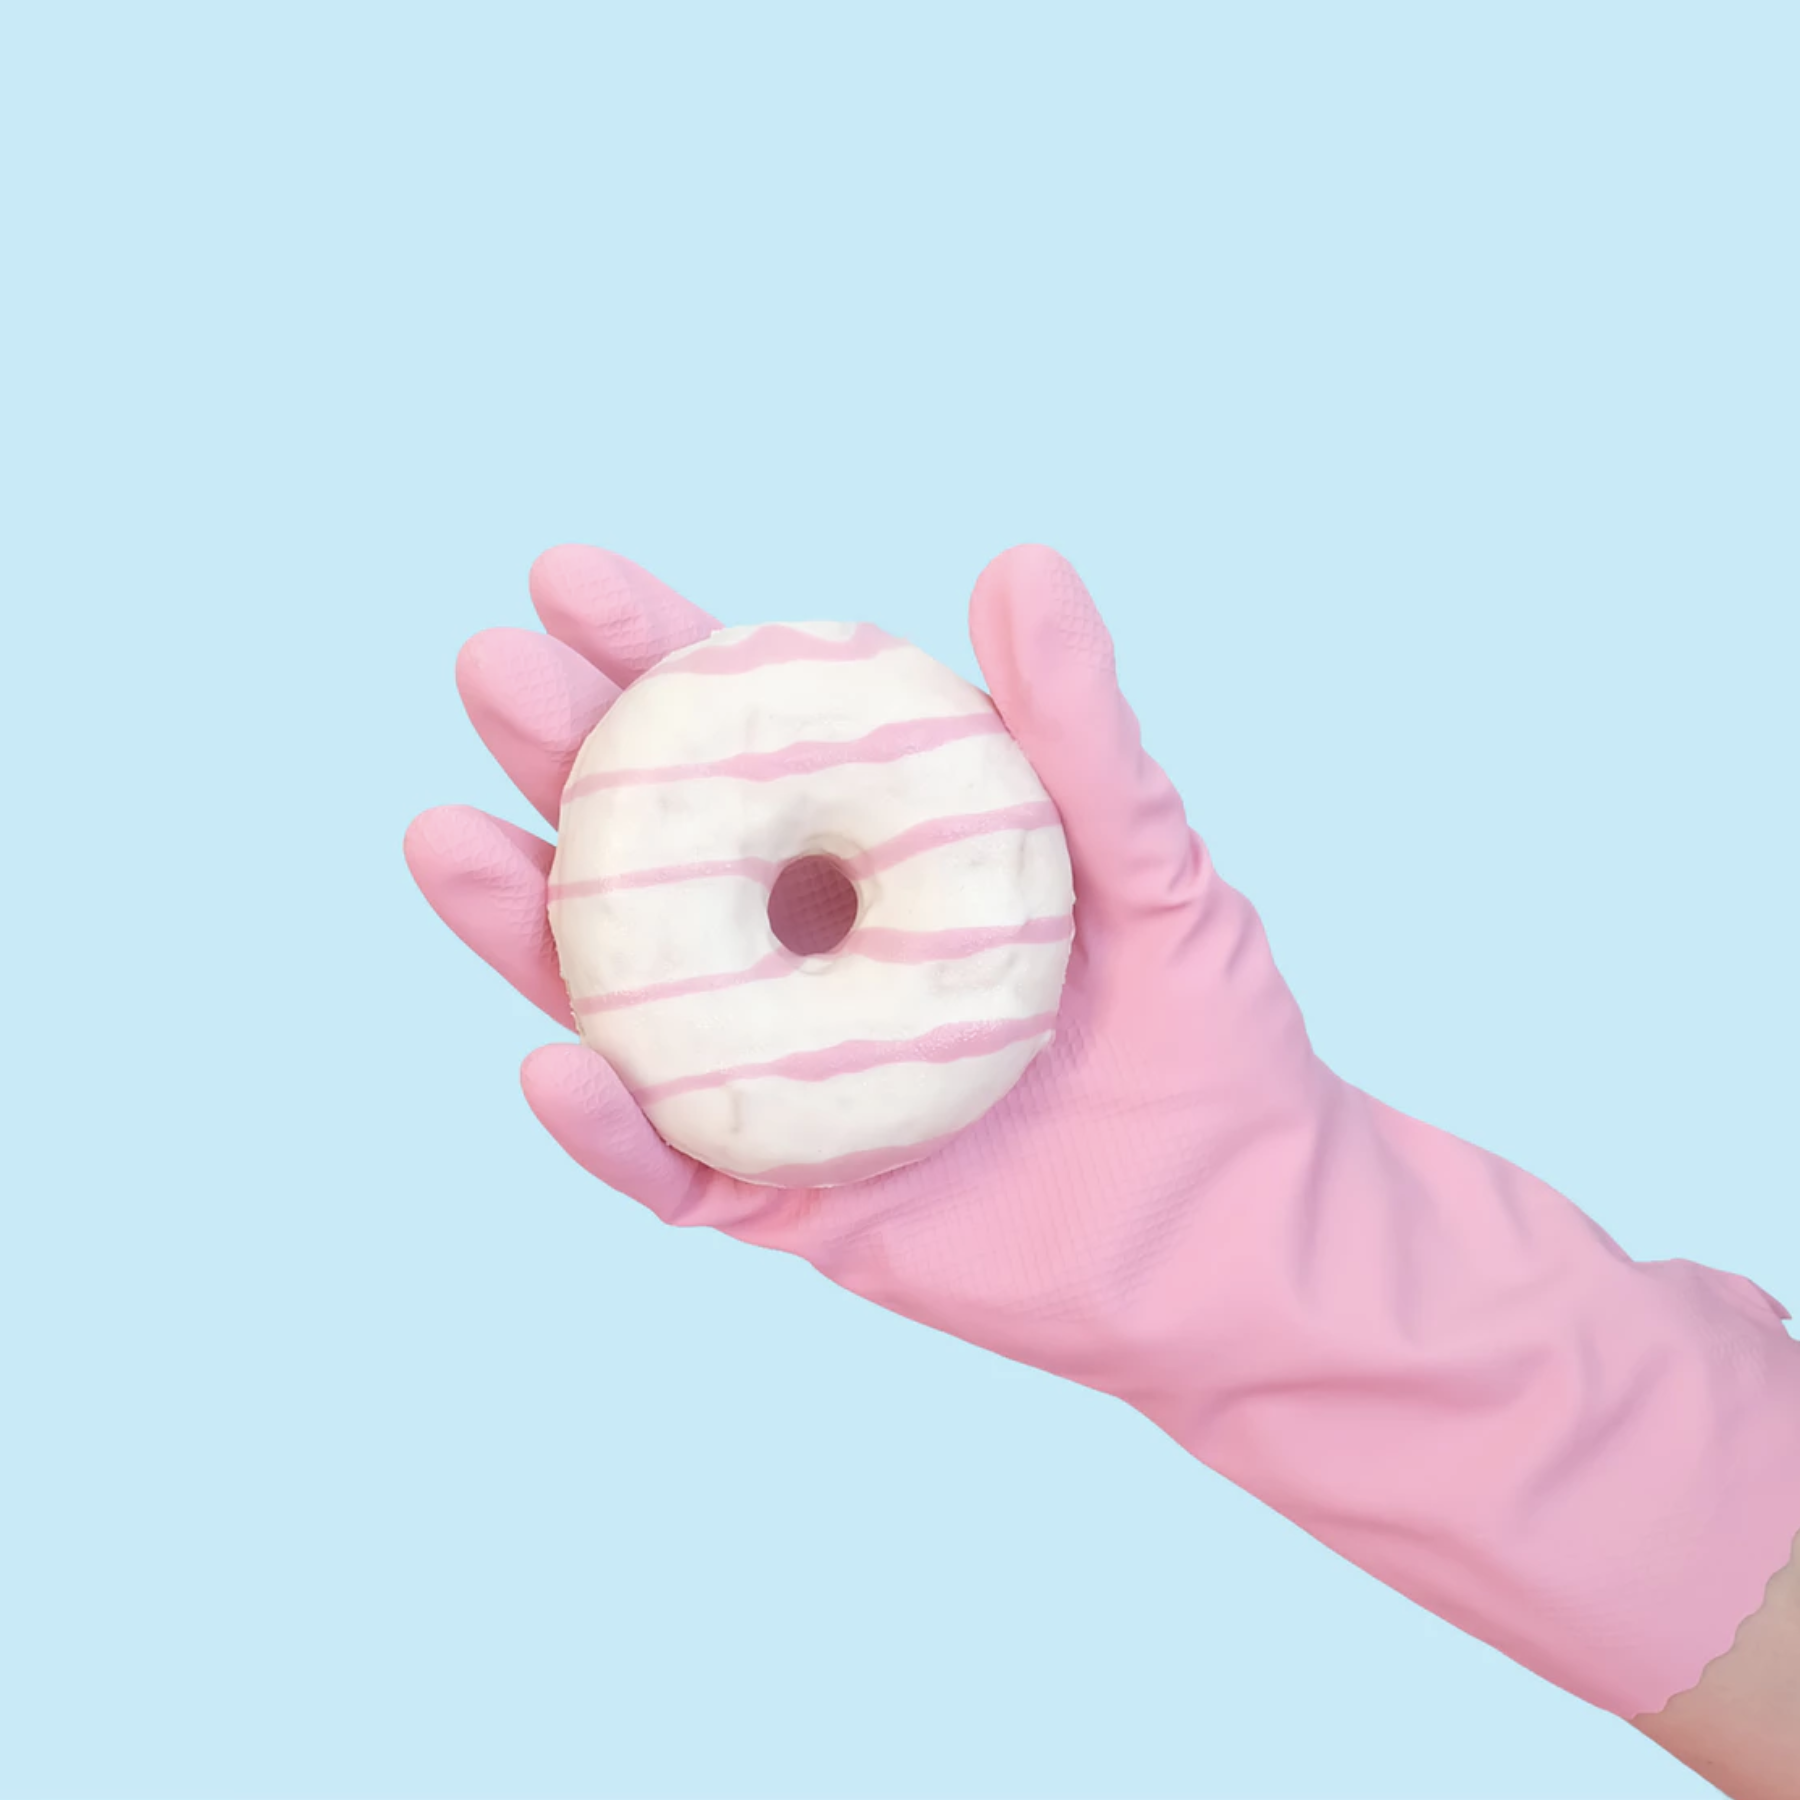 doughnut in a gloved hand